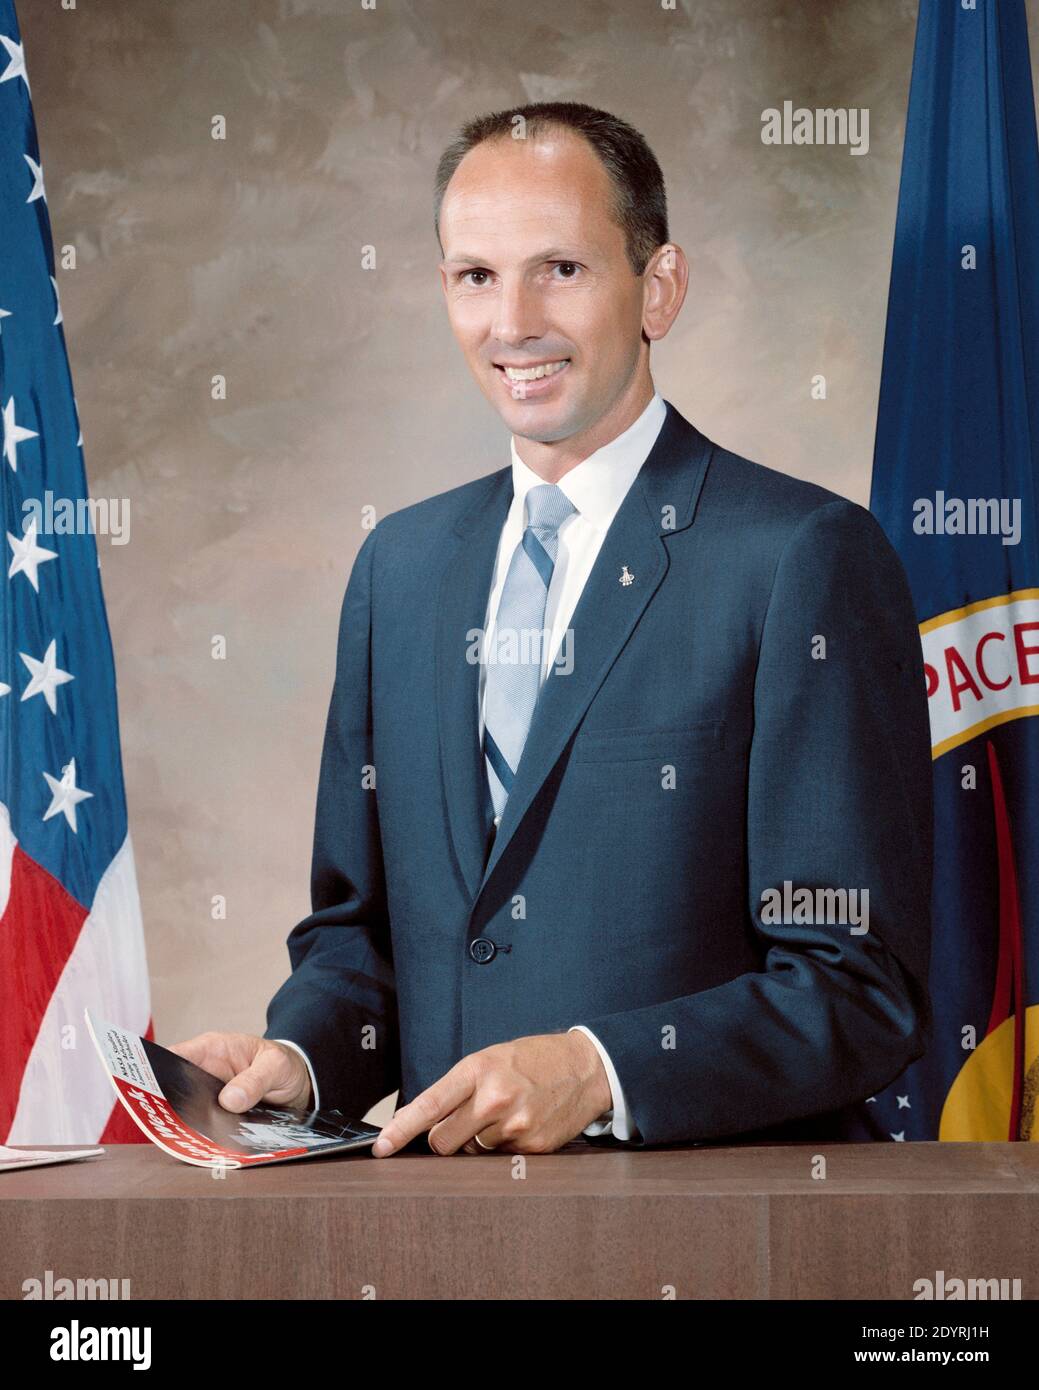 Theodore Cordy 'Ted' Freeman (1930 – 31 de octubre de 1964), ingeniero aeronáutico estadounidense, oficial de la Fuerza Aérea de EE.UU., piloto de pruebas y astronauta de la NASA. Seleccionado en el tercer grupo de astronautas de la NASA en 1963, fue asesinado un año más tarde en el accidente de un avión T-38, marcando la primera fatalidad entre el cuerpo de astronautas de la NASA Foto de stock